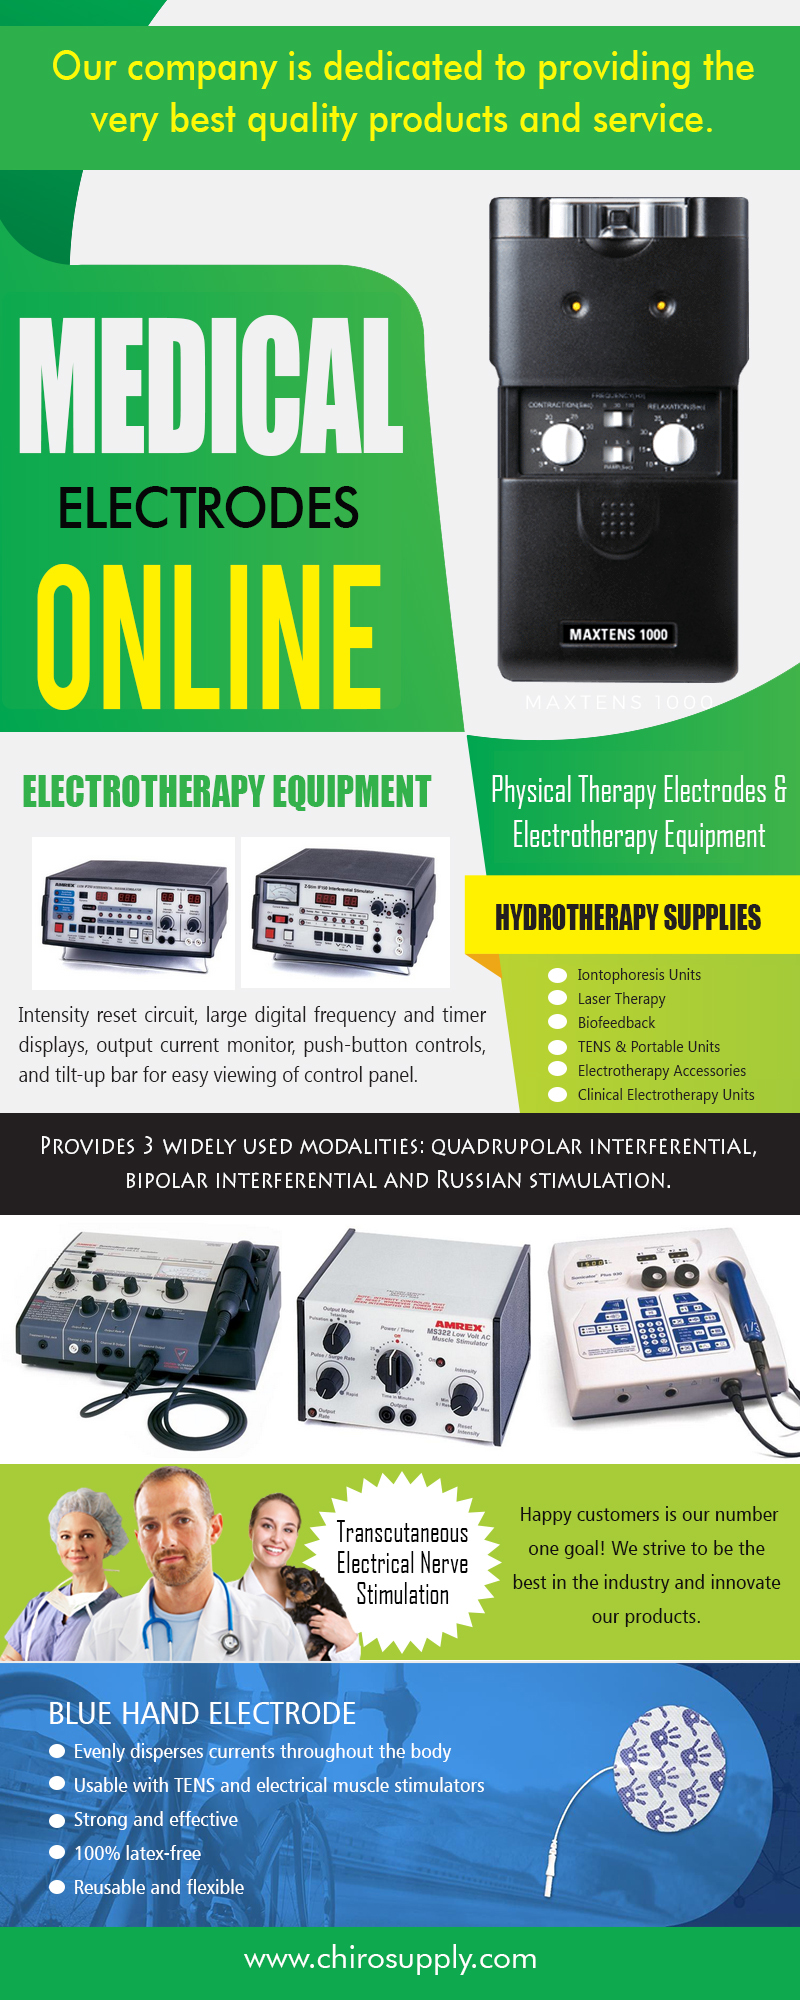 Medical Electrodes Online | 8775639660 | chirosupply.com